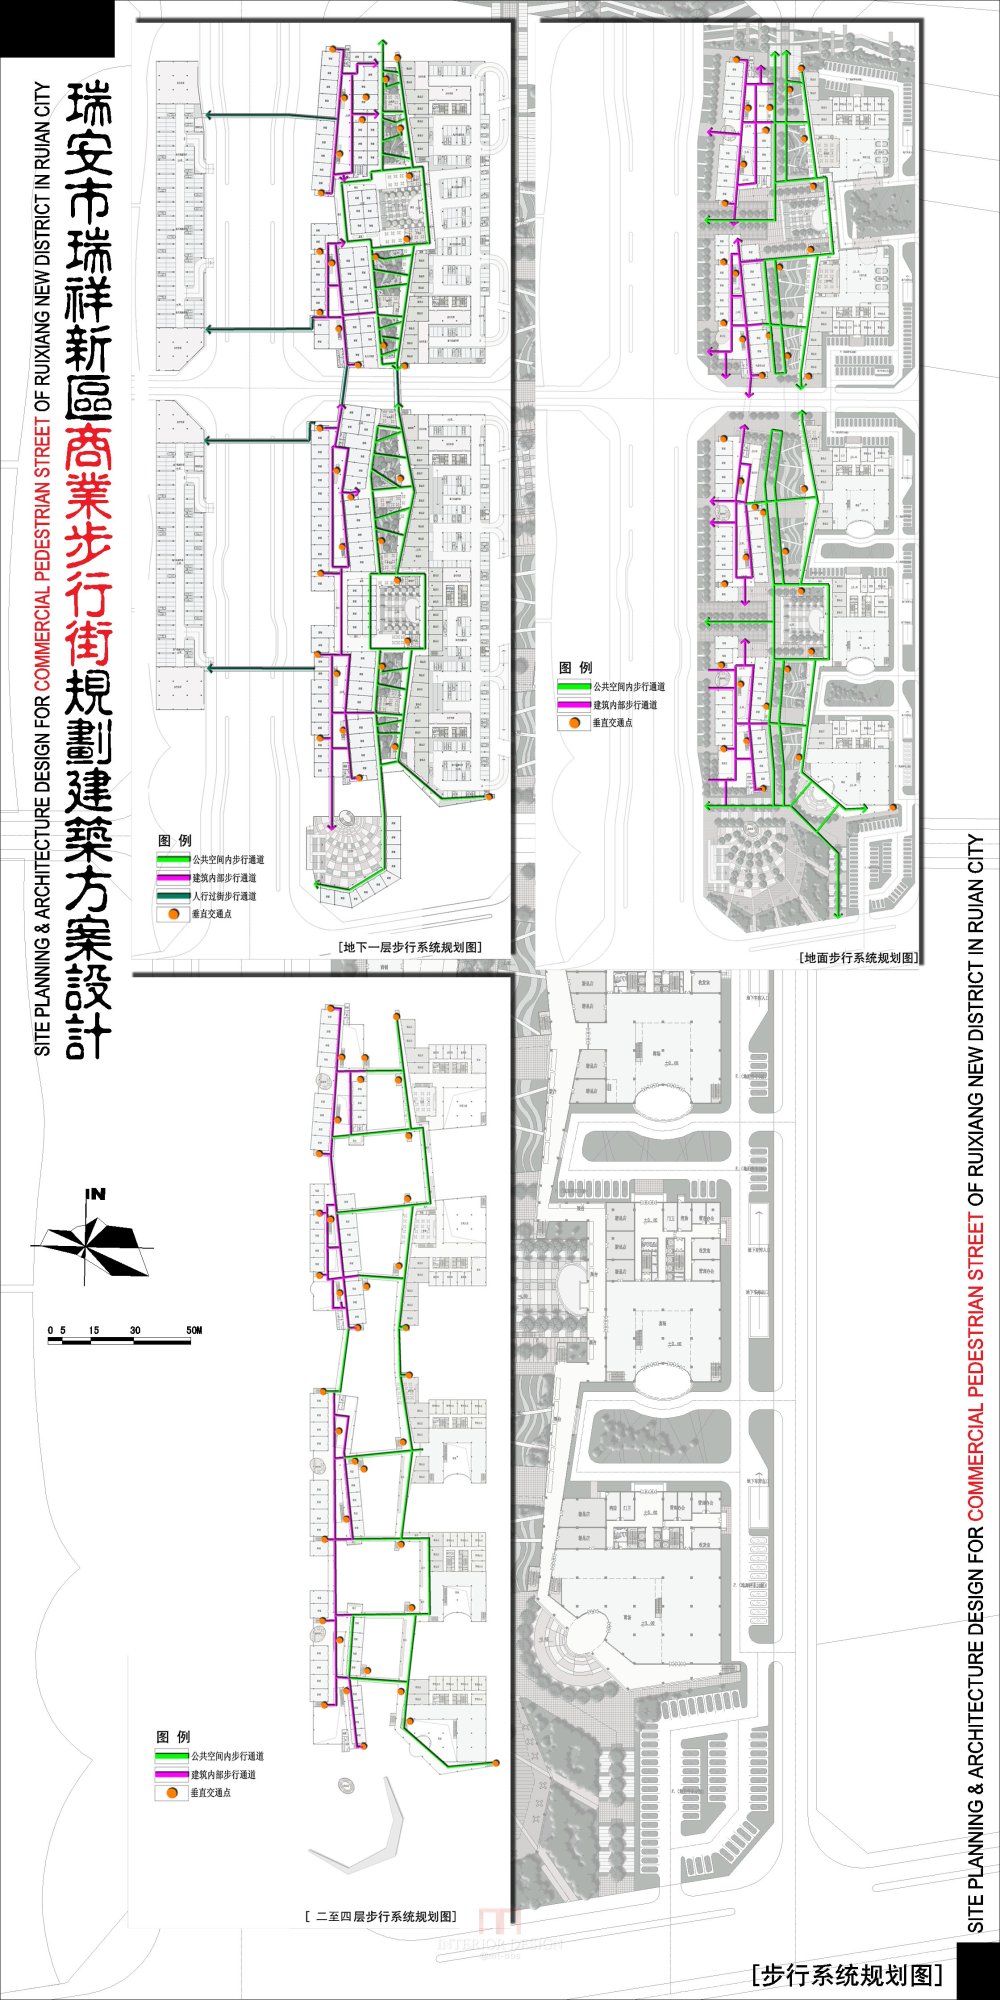 浙江瑞安新区商业步行街规划建筑设计方案_2-12瑞安商业街-步行系统规划图.jpg